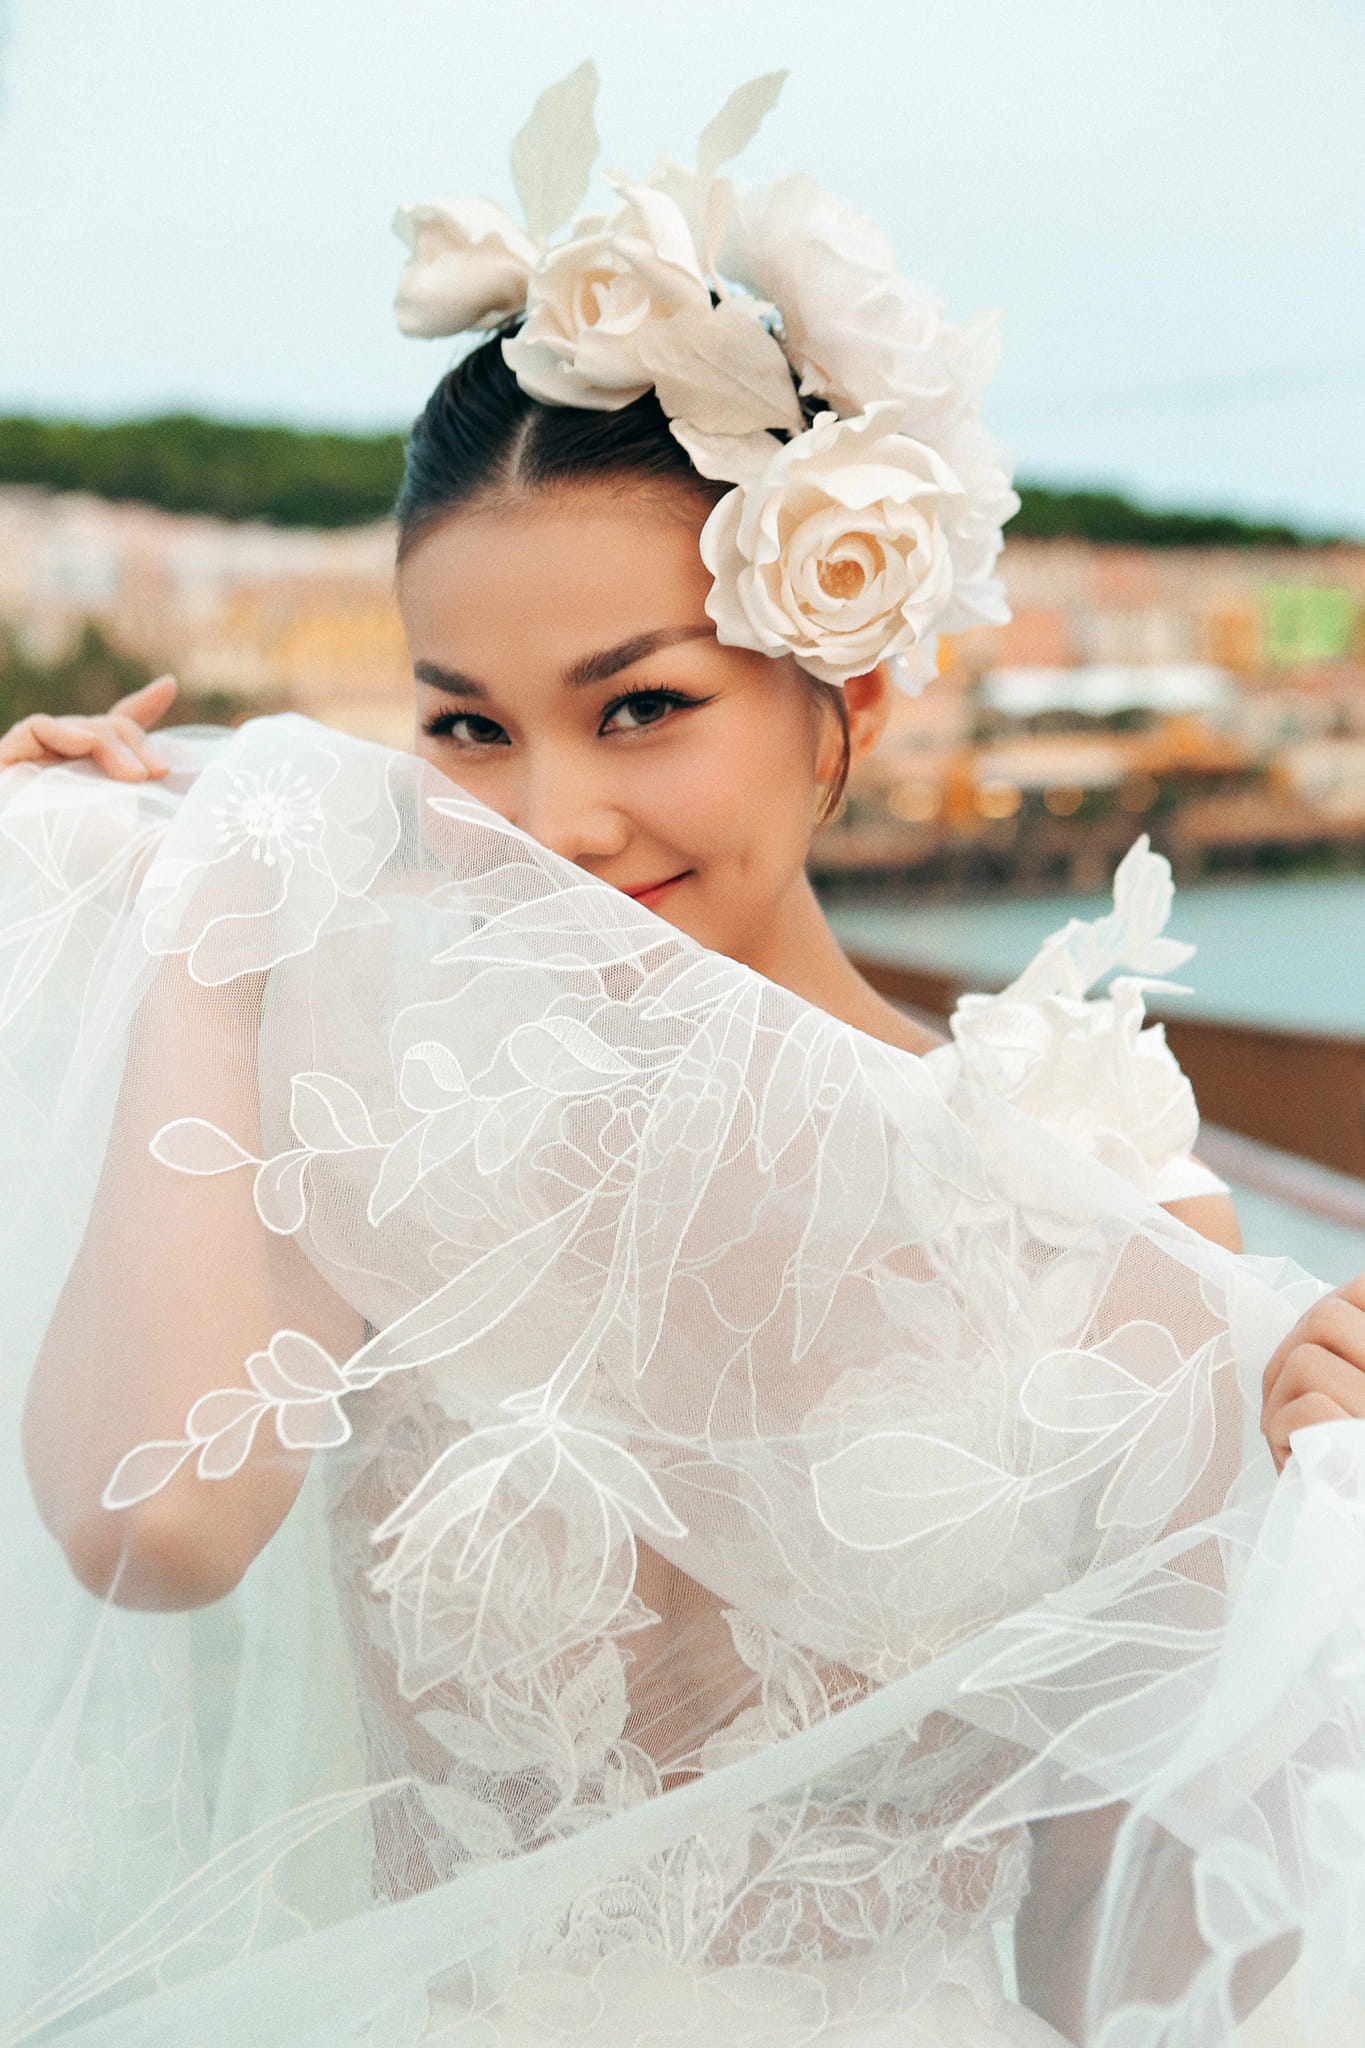 Thanh Hằng sẽ tổ chức đám cưới với nhạc trưởng Trần Nhật Minh vào ngày 22/10 sắp tới. Ảnh: FBNV